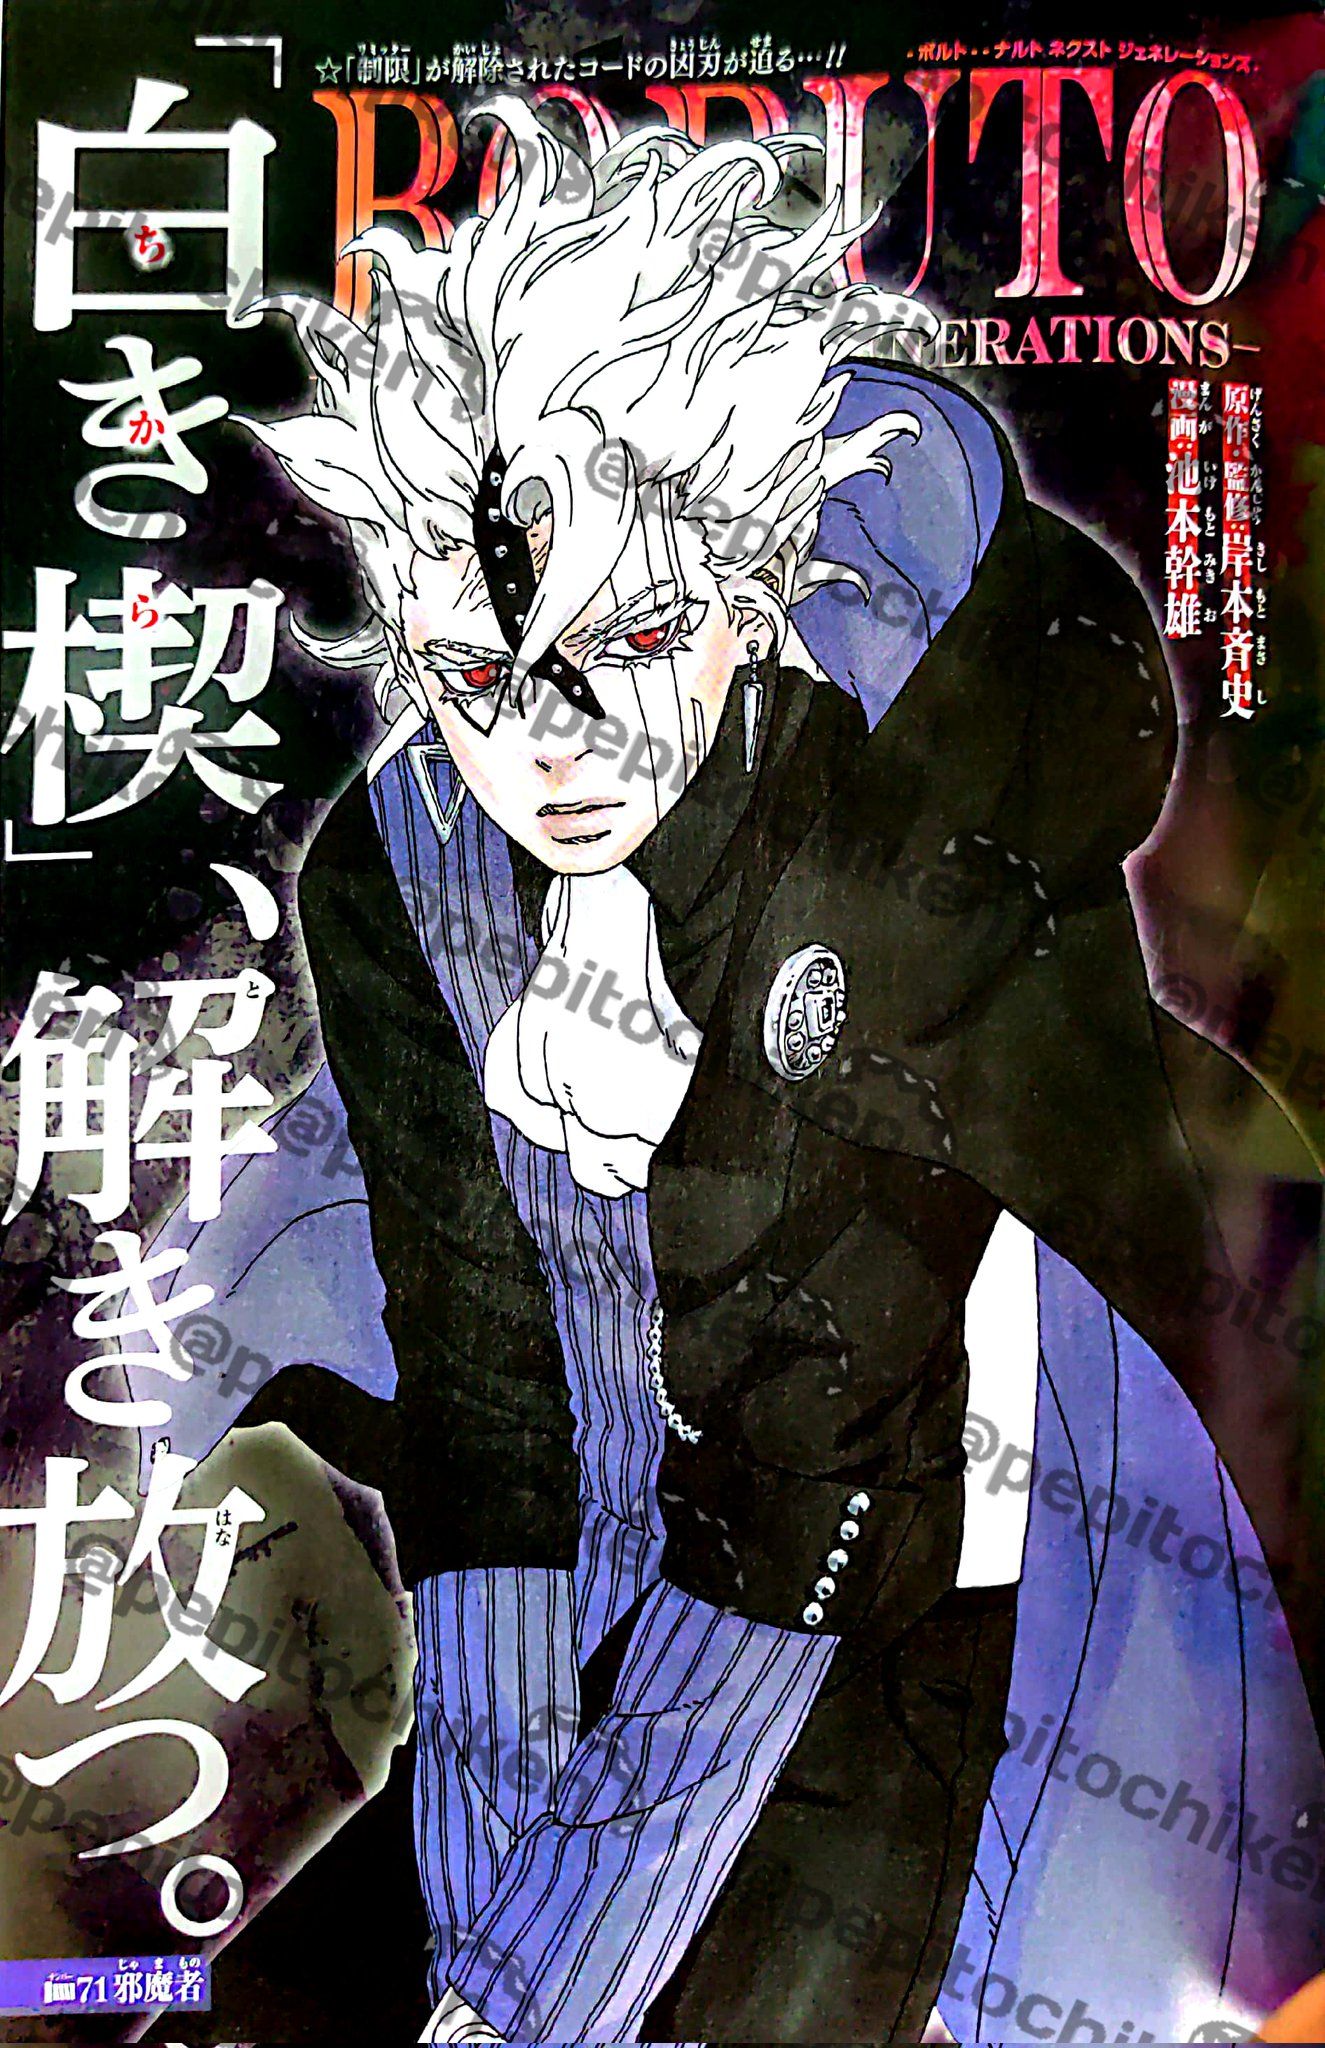 Halaman Sampul Manga Boruto Chapter 71 bergambar Code mengenakan pakaian rapi seperti biasannya.